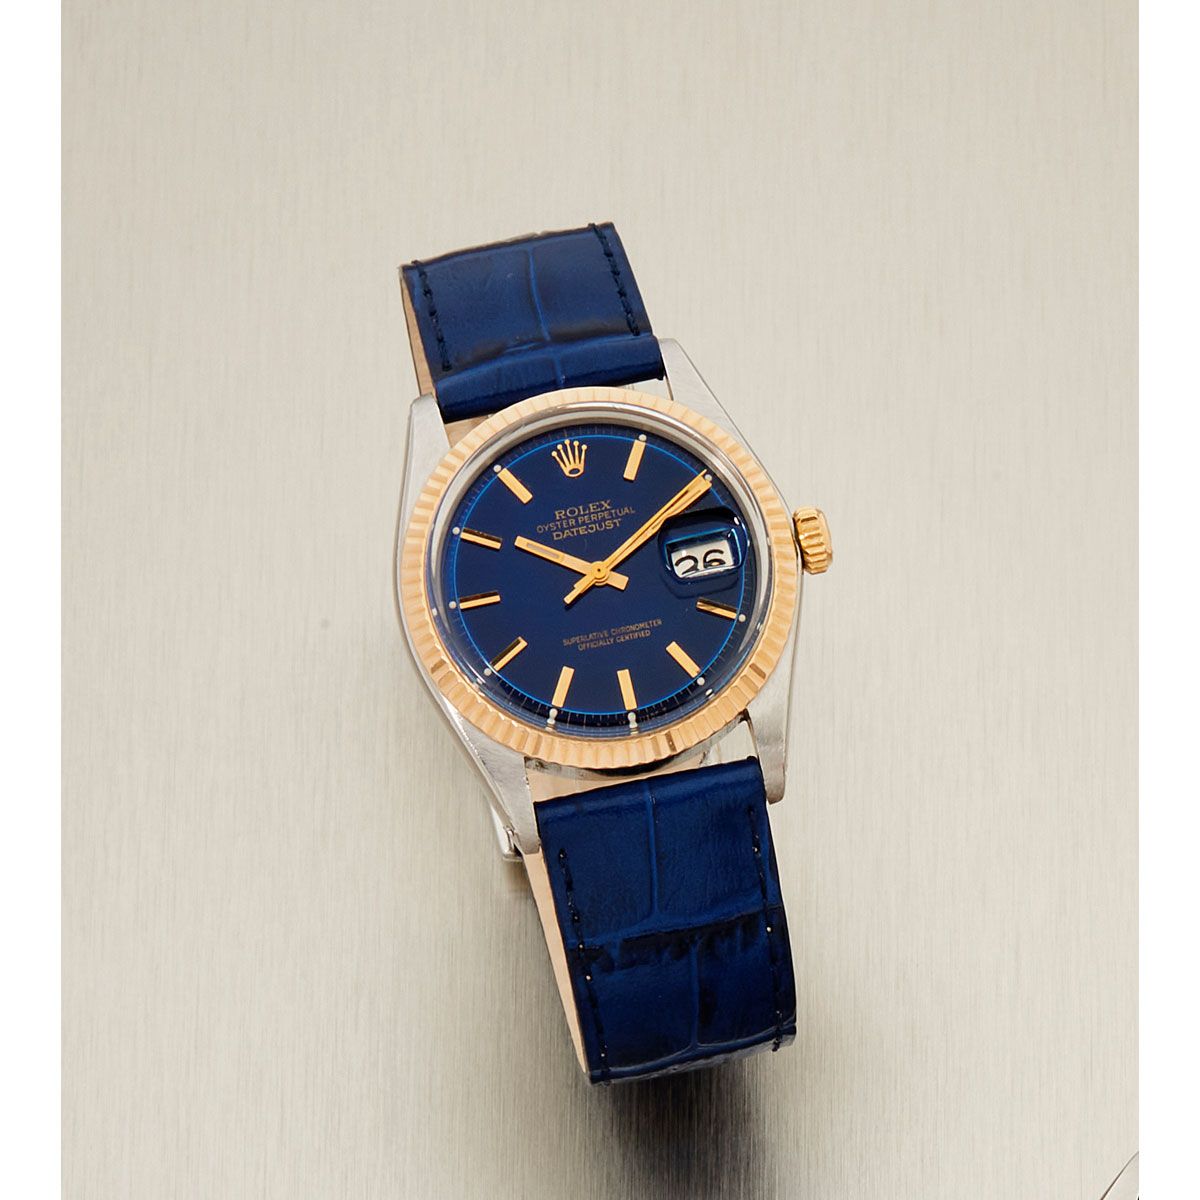 Null Rolex, Datejust, Ref. 1601, Nr. 4037xxx, ca. 1976.

Eine schöne Uhr aus Sta&hellip;